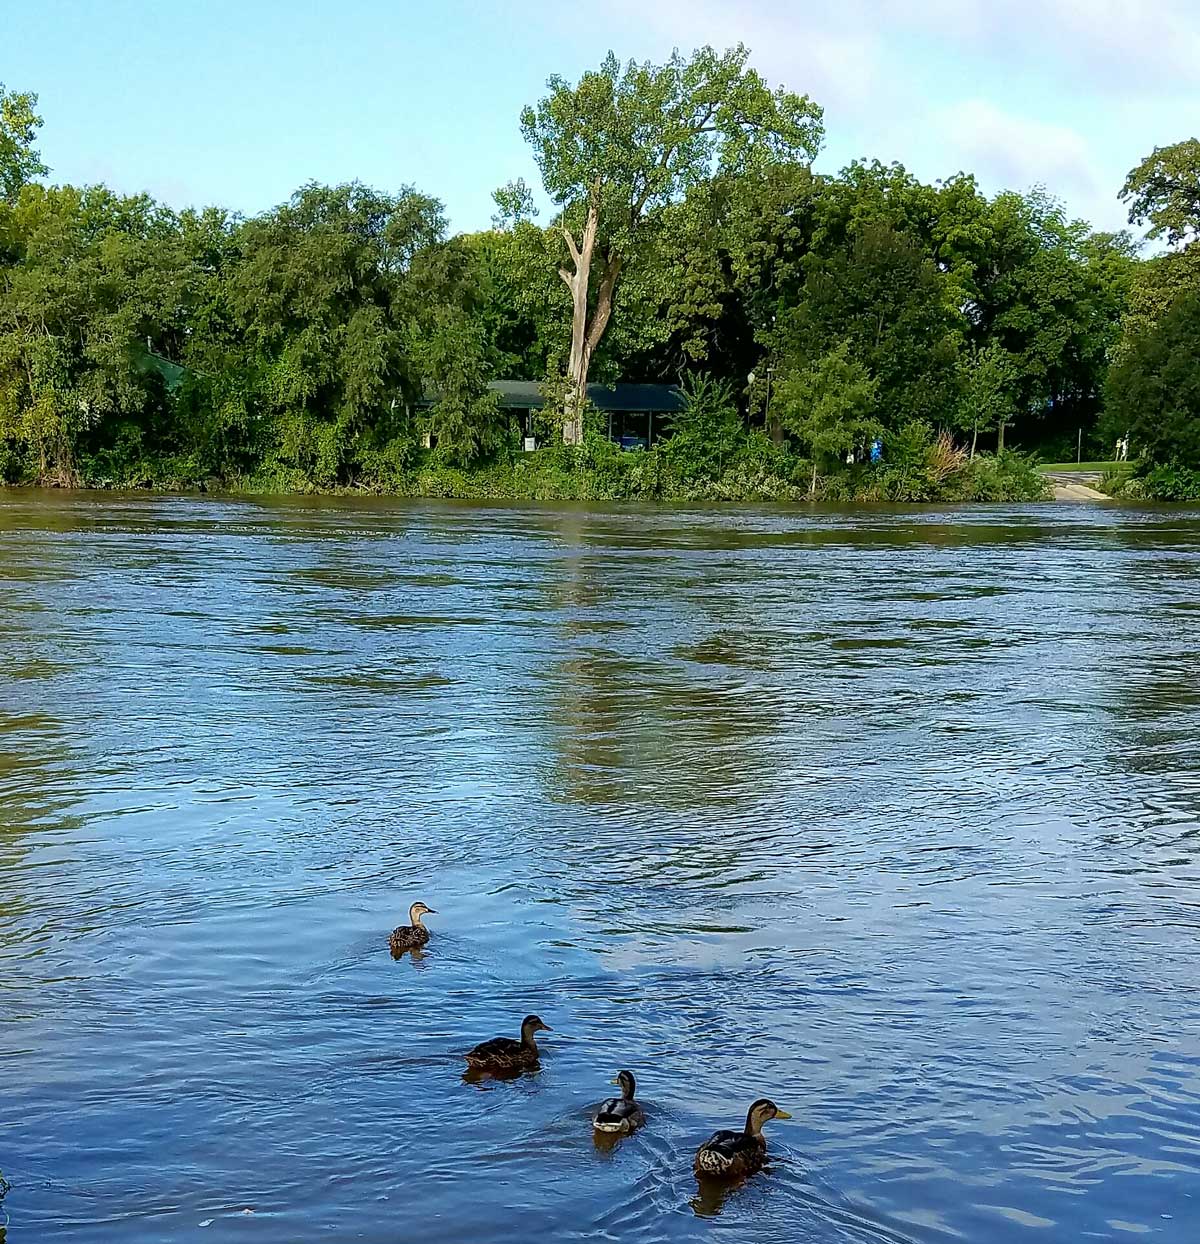 Ducks enjoying the Kankakee River